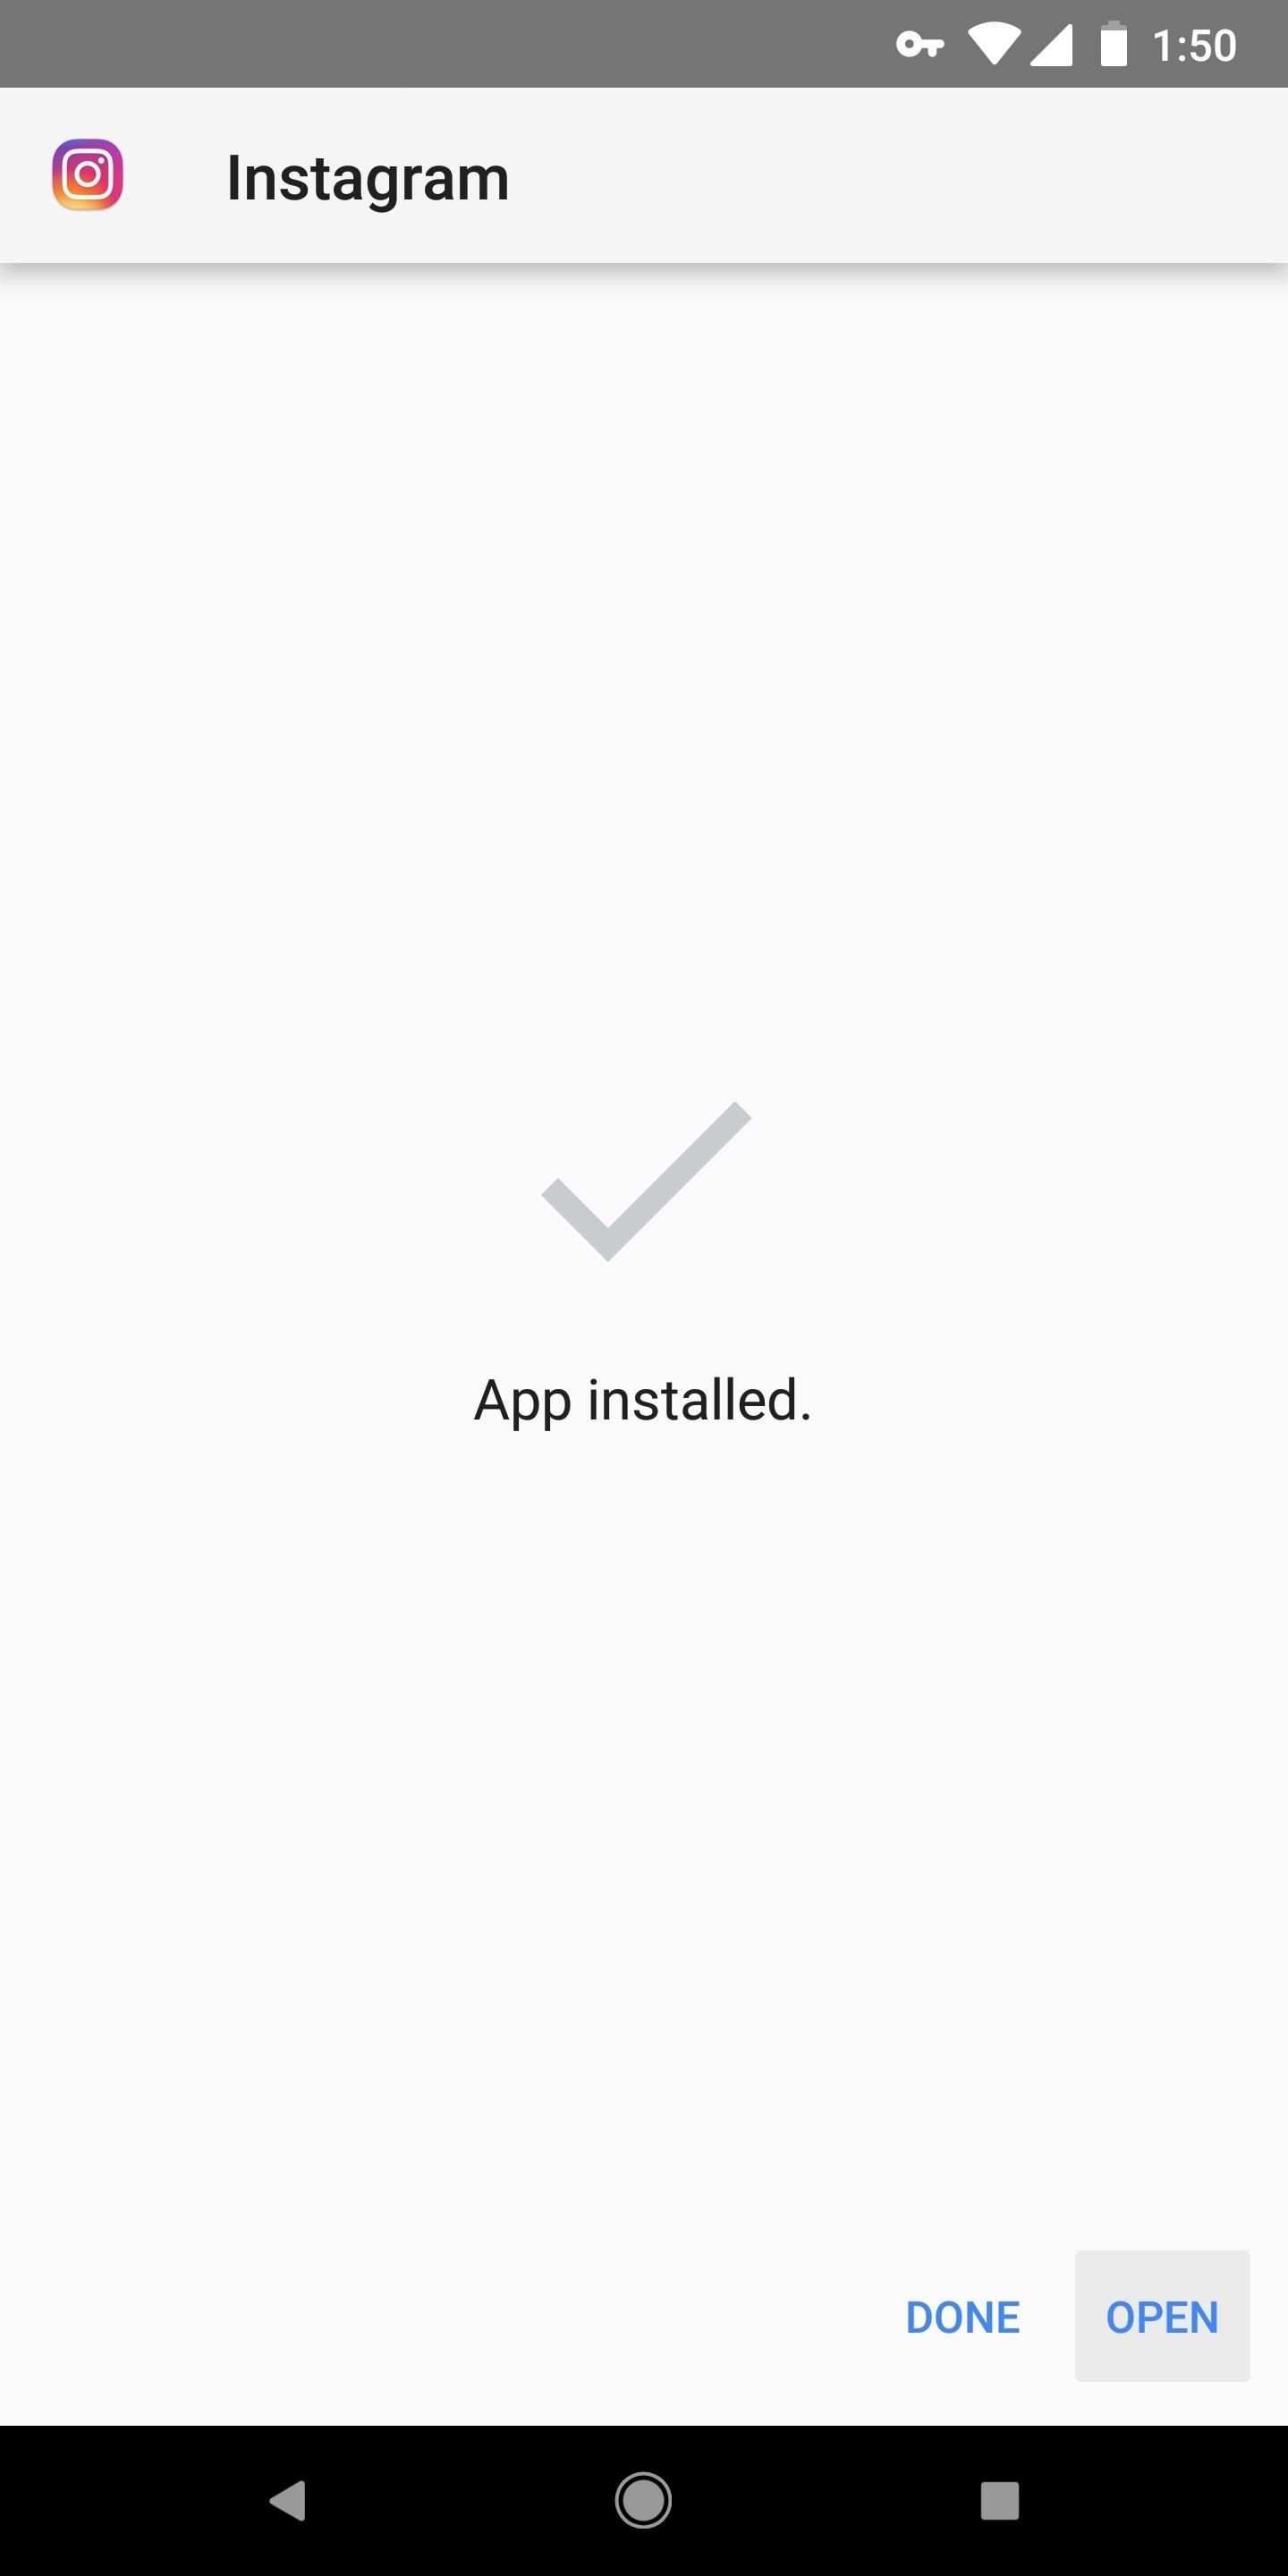 Stoppa alla applikationer permanent från uppdatering i Play Store - inget behov av en dator